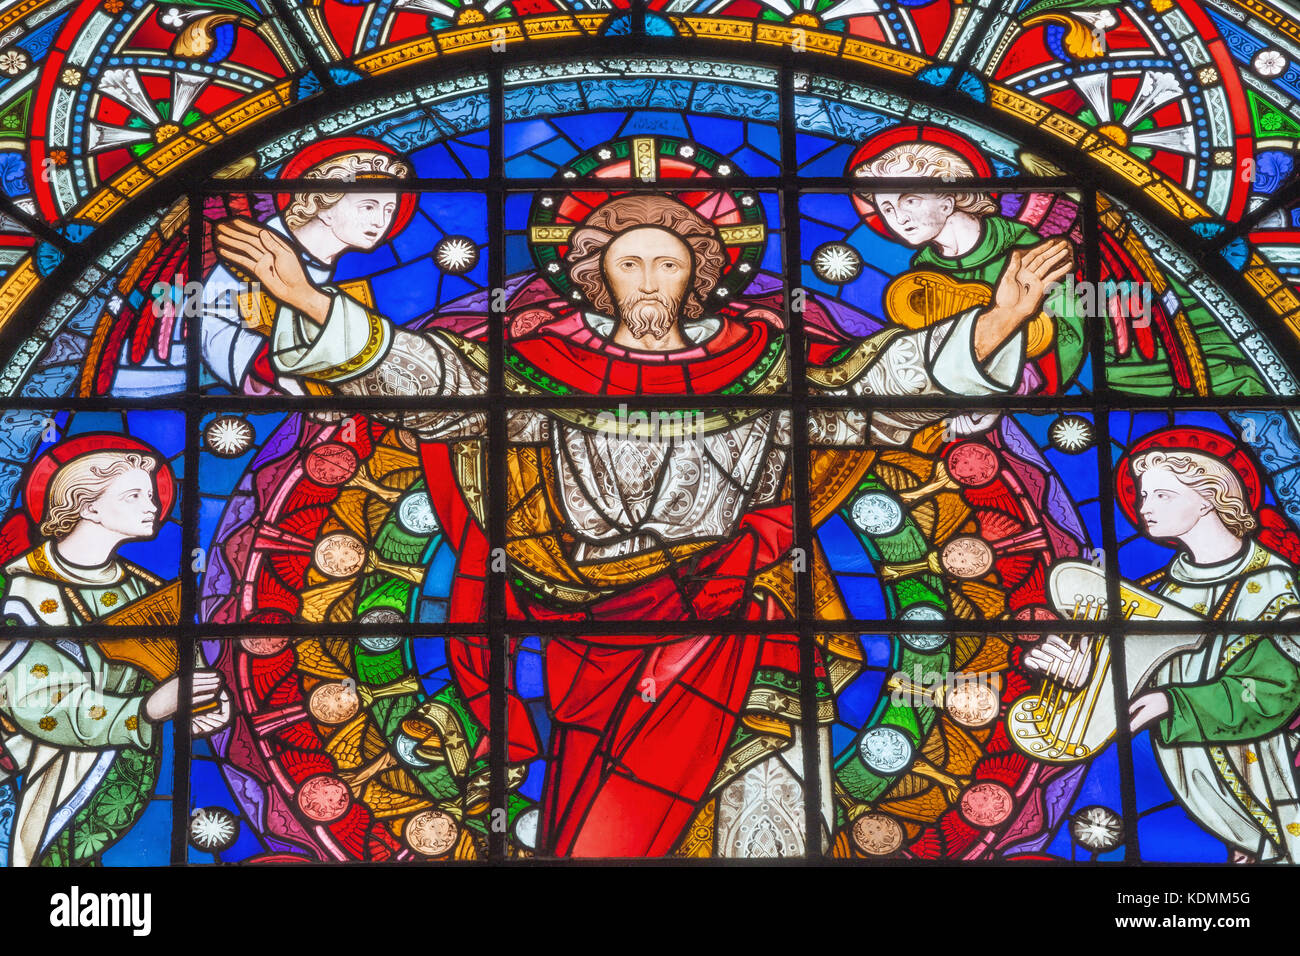 Londra, Gran Bretagna - 14 settembre 2017: il Risorto Gesù Cristo tra gli angeli sul vetro macchiato nella chiesa di st. Michael cornhill. Foto Stock